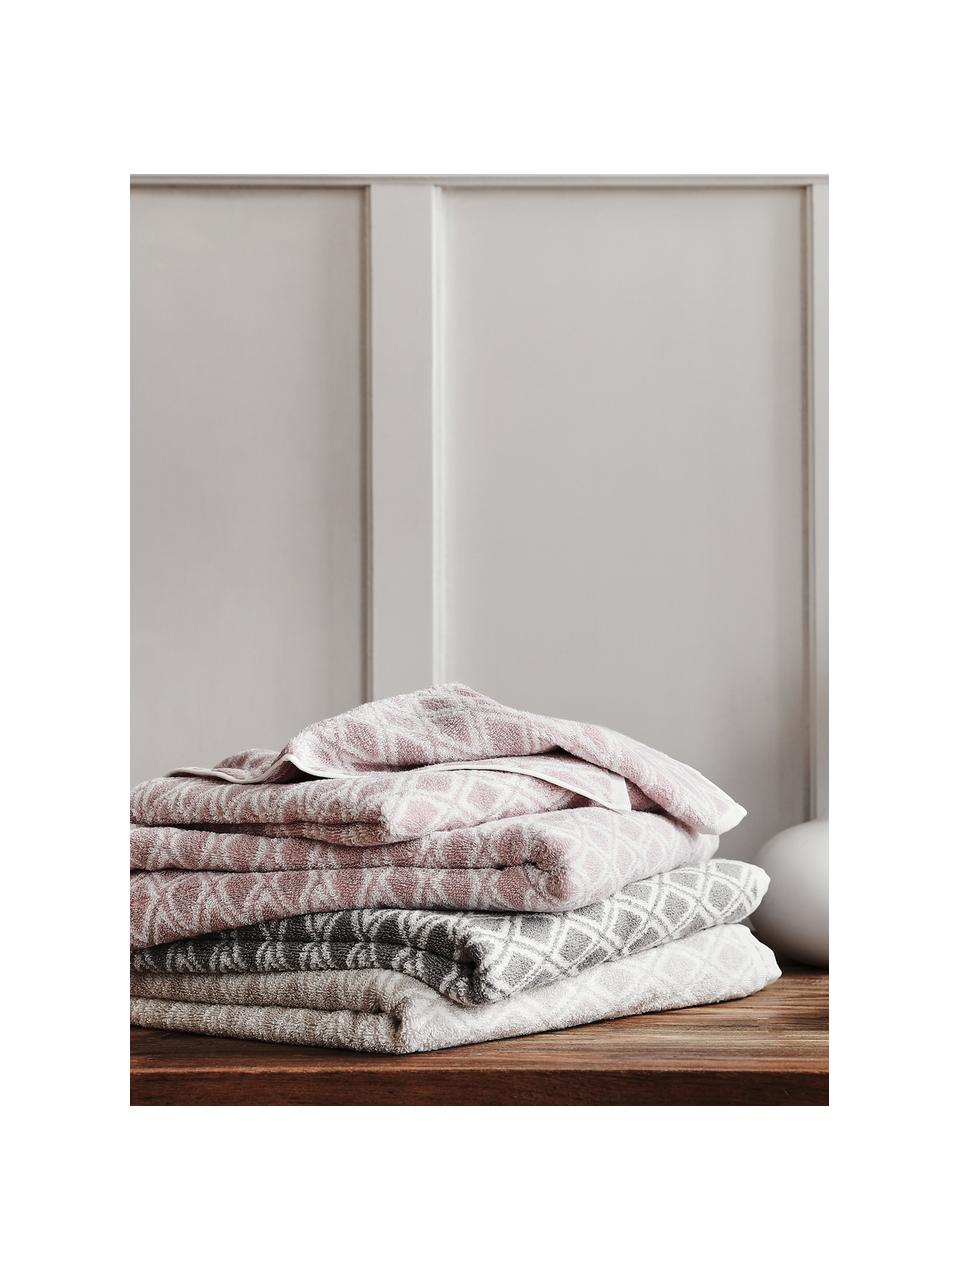 Súprava obojstranných uterákov Ava, 3 diely, Bledoružová, krémovobiela, Súprava s rôznymi veľkosťami